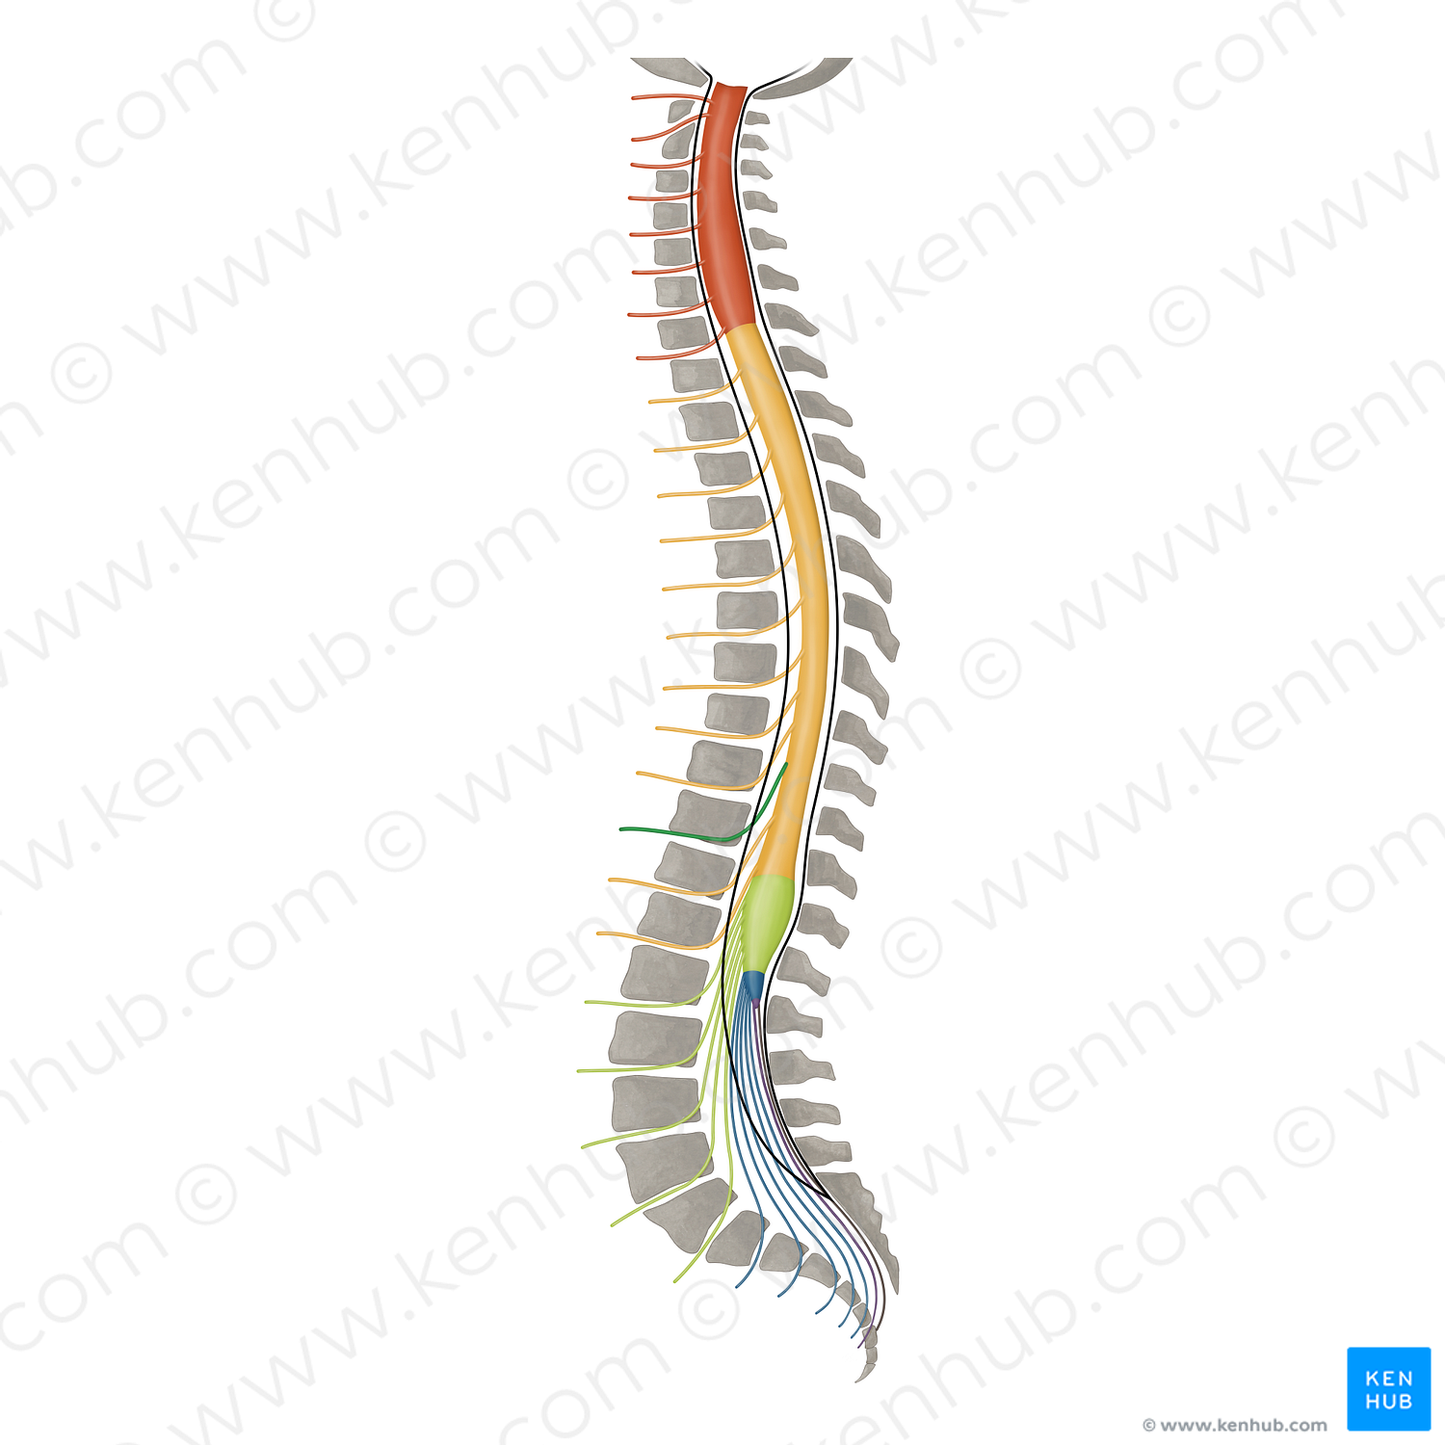 Spinal nerve T10 (#16432)